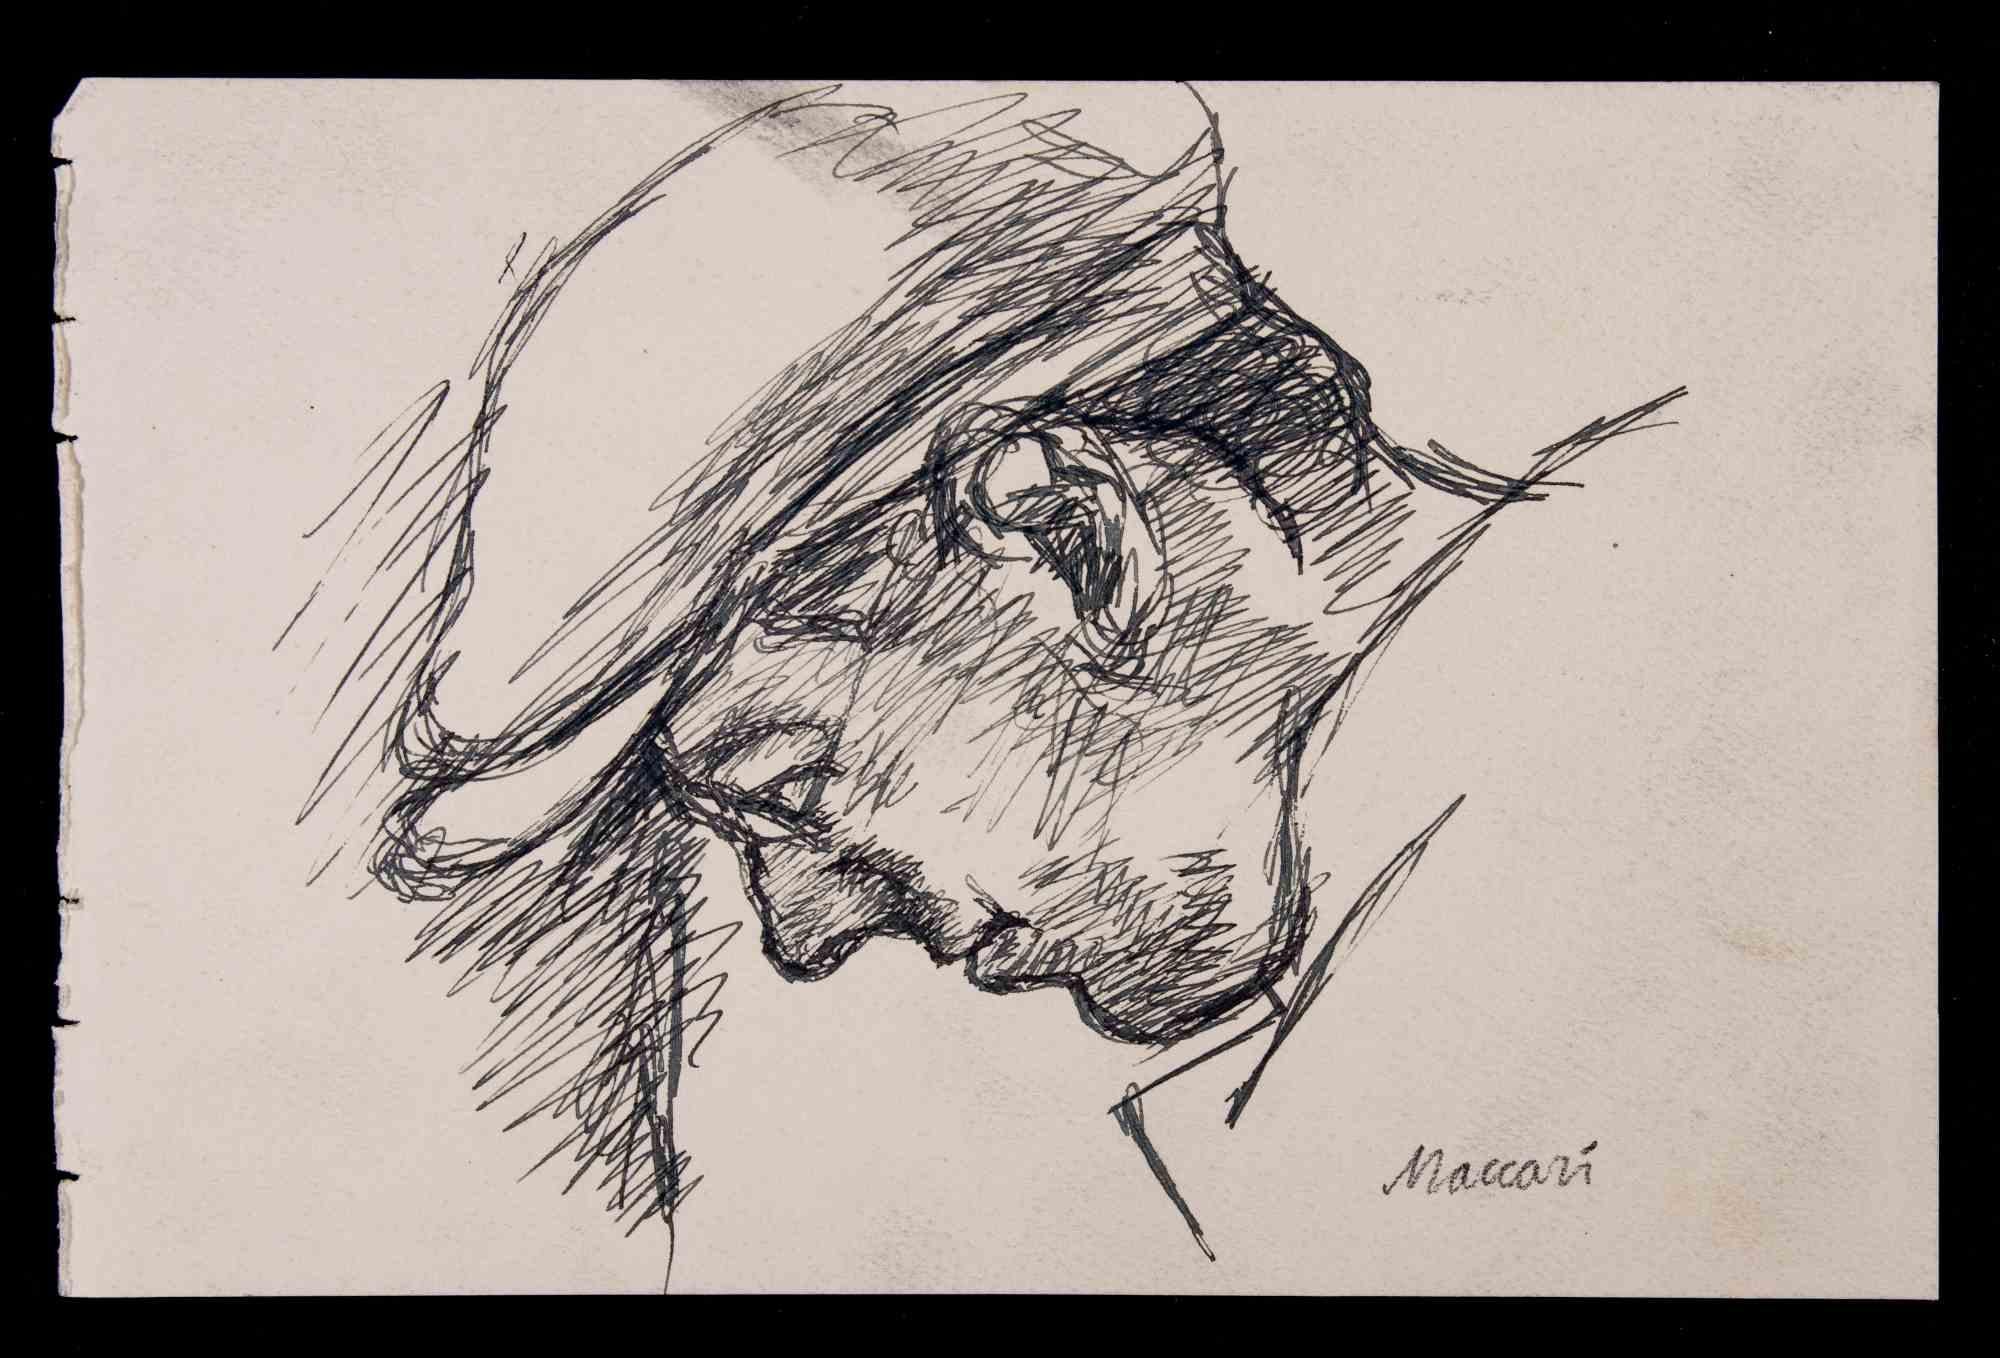 Porträt – Zeichnung von Mino Maccari – 1928